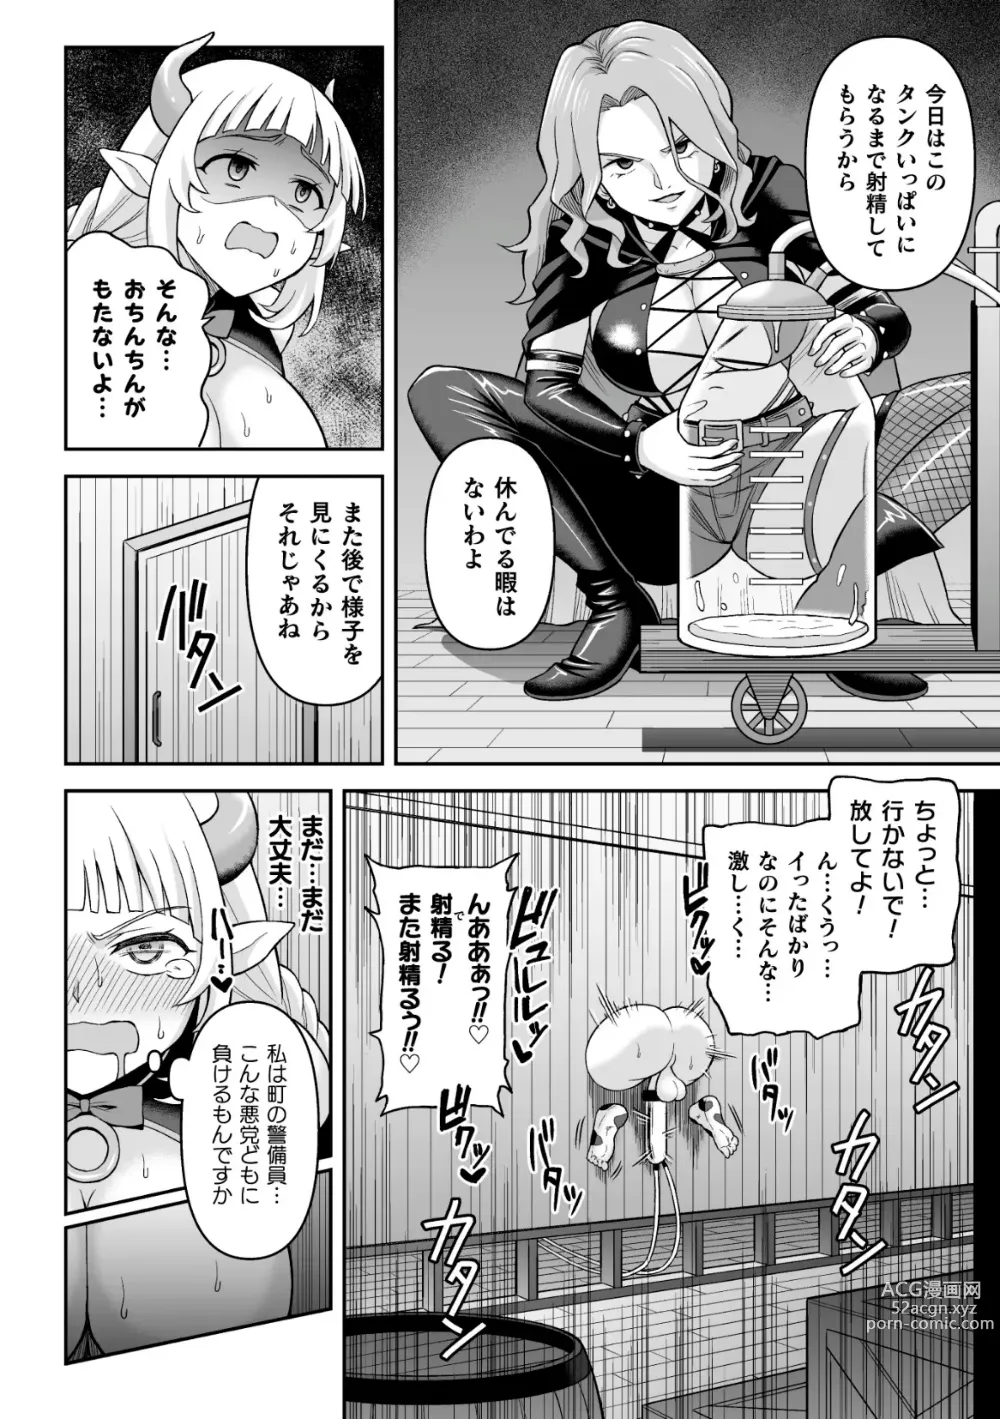 Page 28 of manga 2D Comic Magazine Futanari Kabe Sao Kabe Shiri Futanari Heroine Sakusei Iki Jigoku! Vol. 1